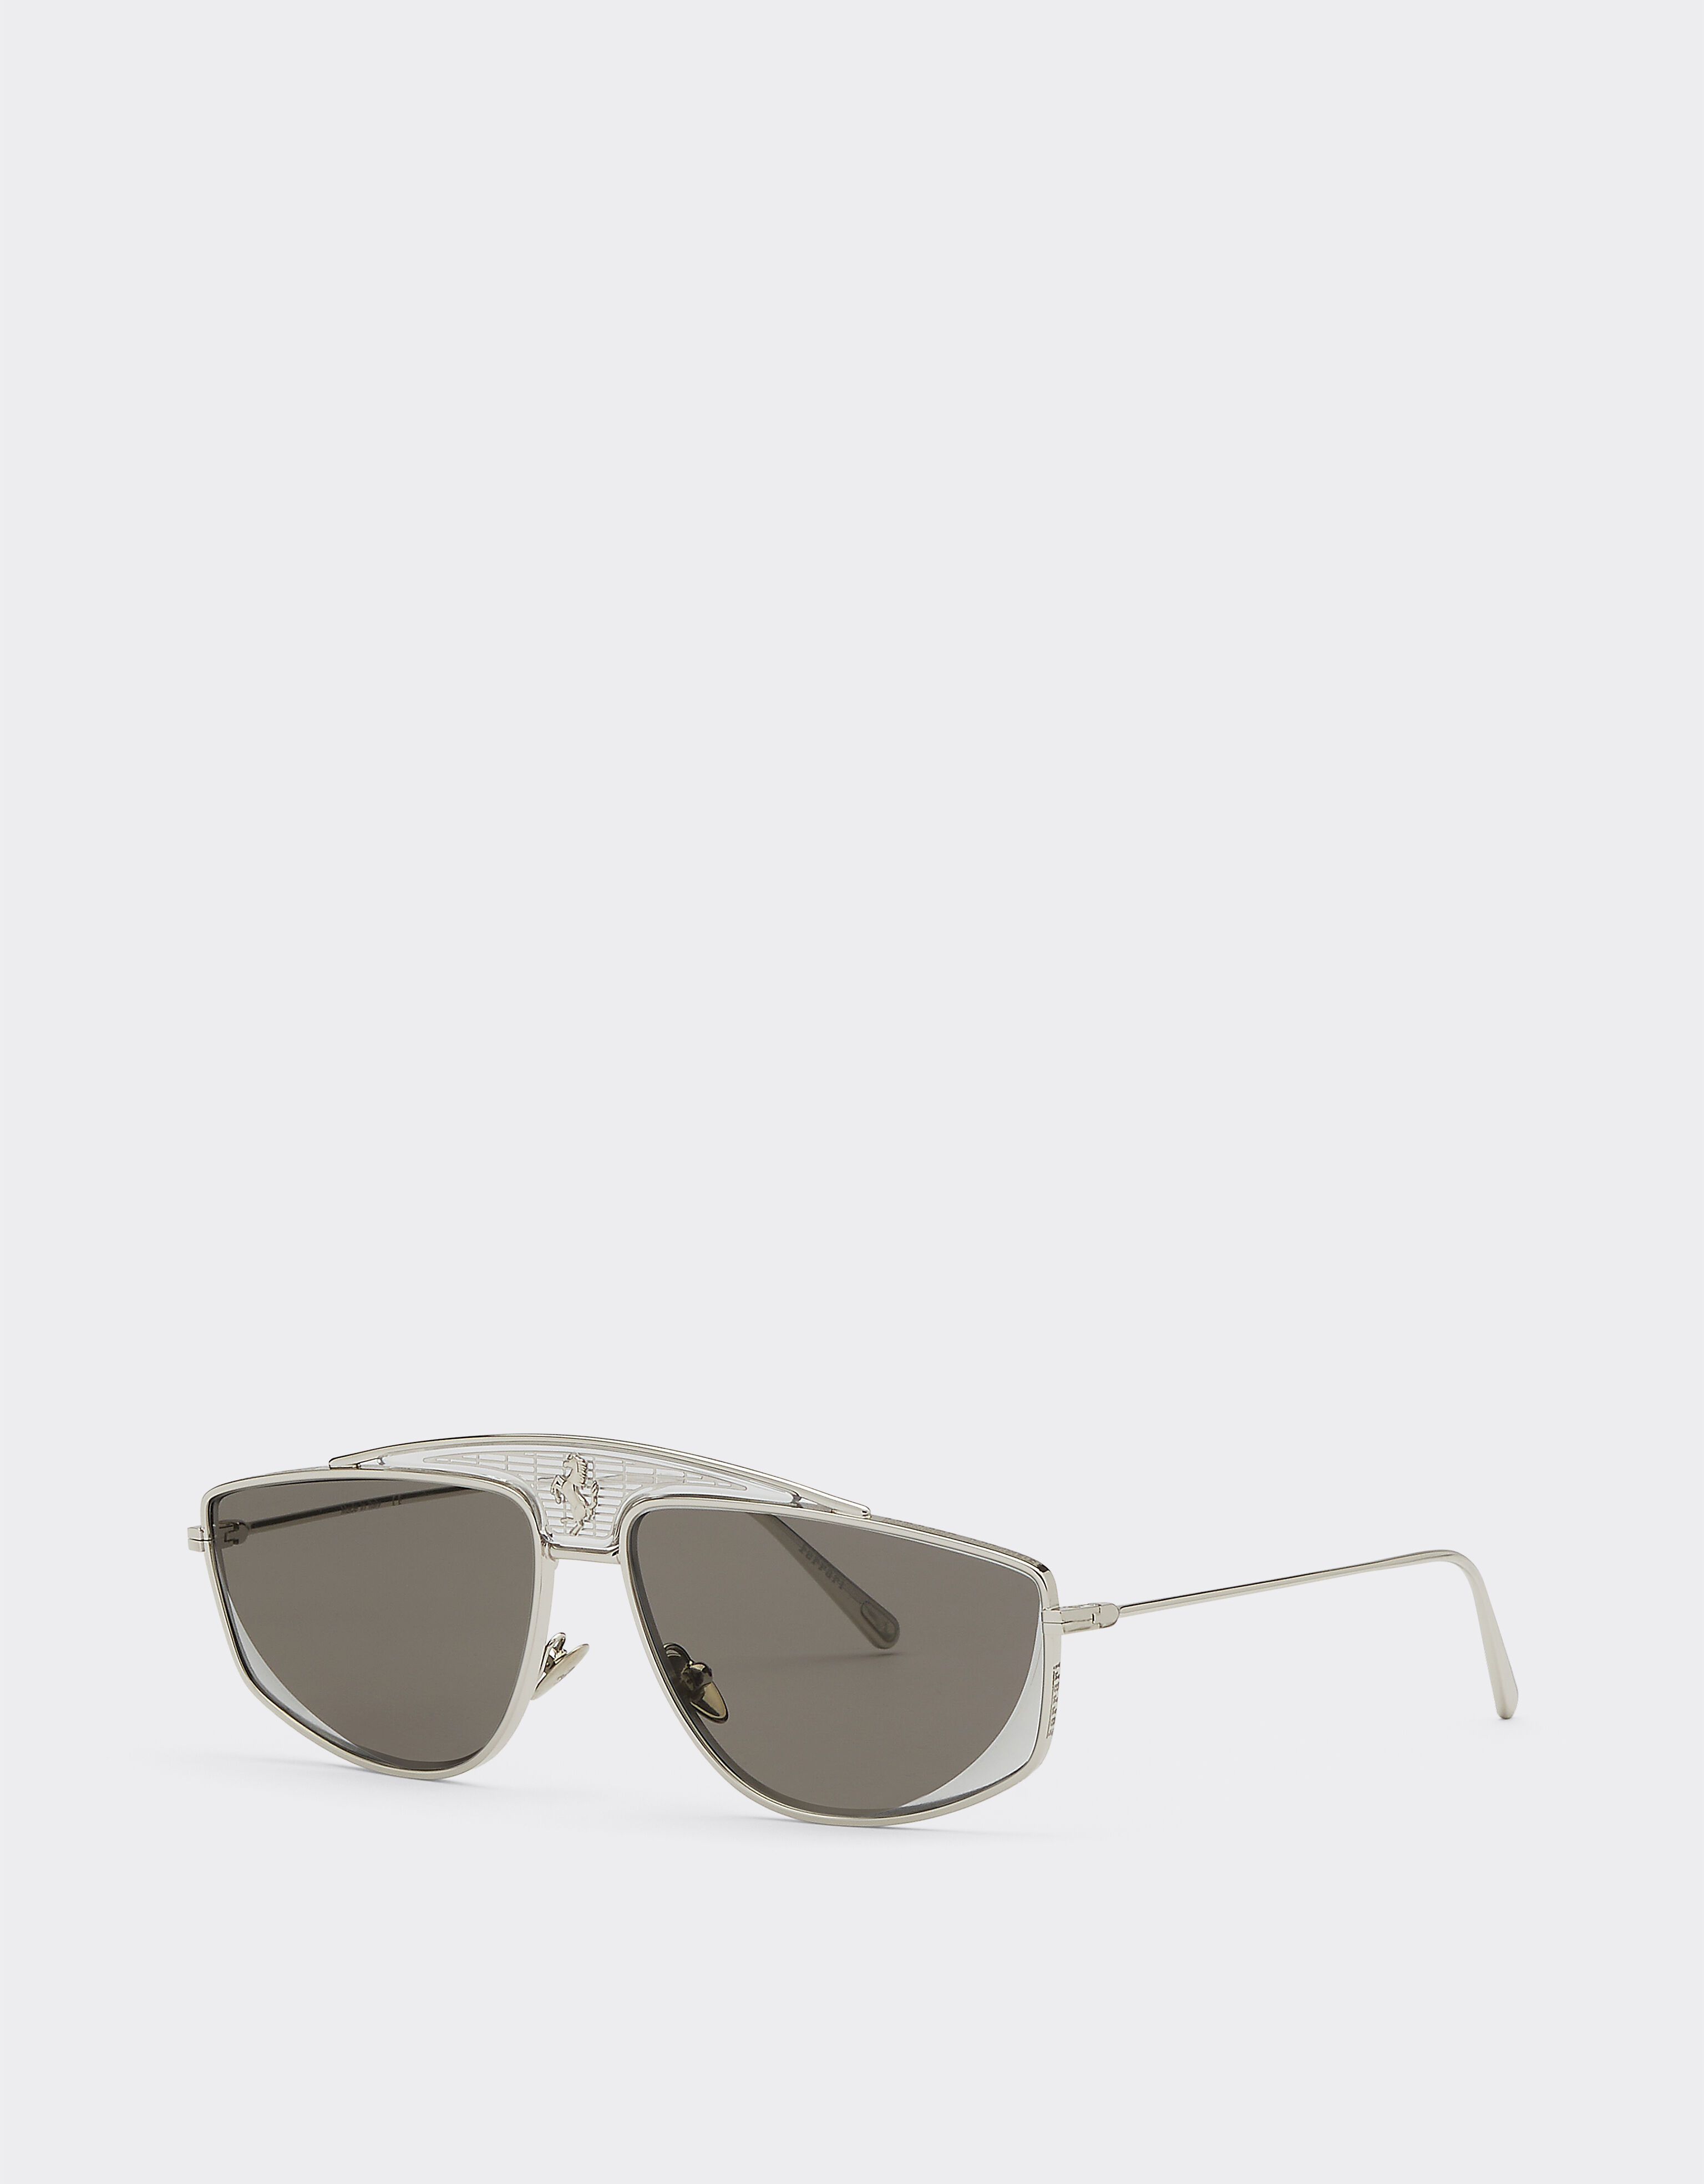 Ferrari Ferrari-Sonnenbrille mit silberfarben verspiegelten Gläsern Silber F0408f